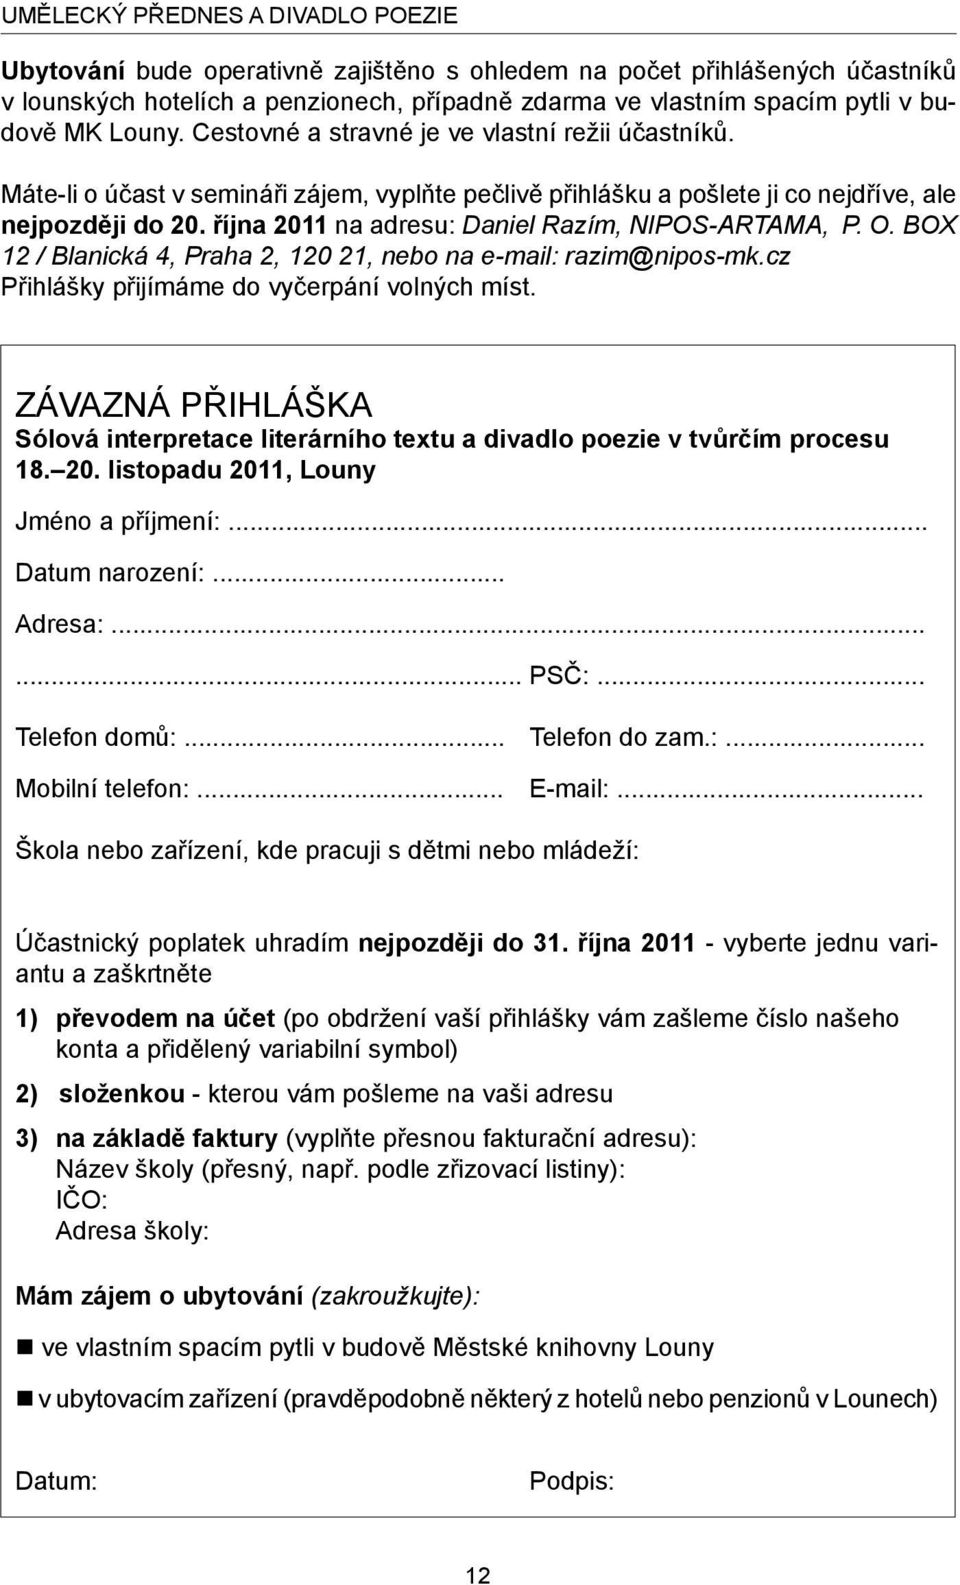 října 2011 na adresu: Daniel Razím, NIPOS-ARTAMA, P. O. BOX 12 / Blanická 4, Praha 2, 120 21, nebo na e-mail: razim@nipos-mk.cz Přihlášky přijímáme do vyčerpání volných míst.